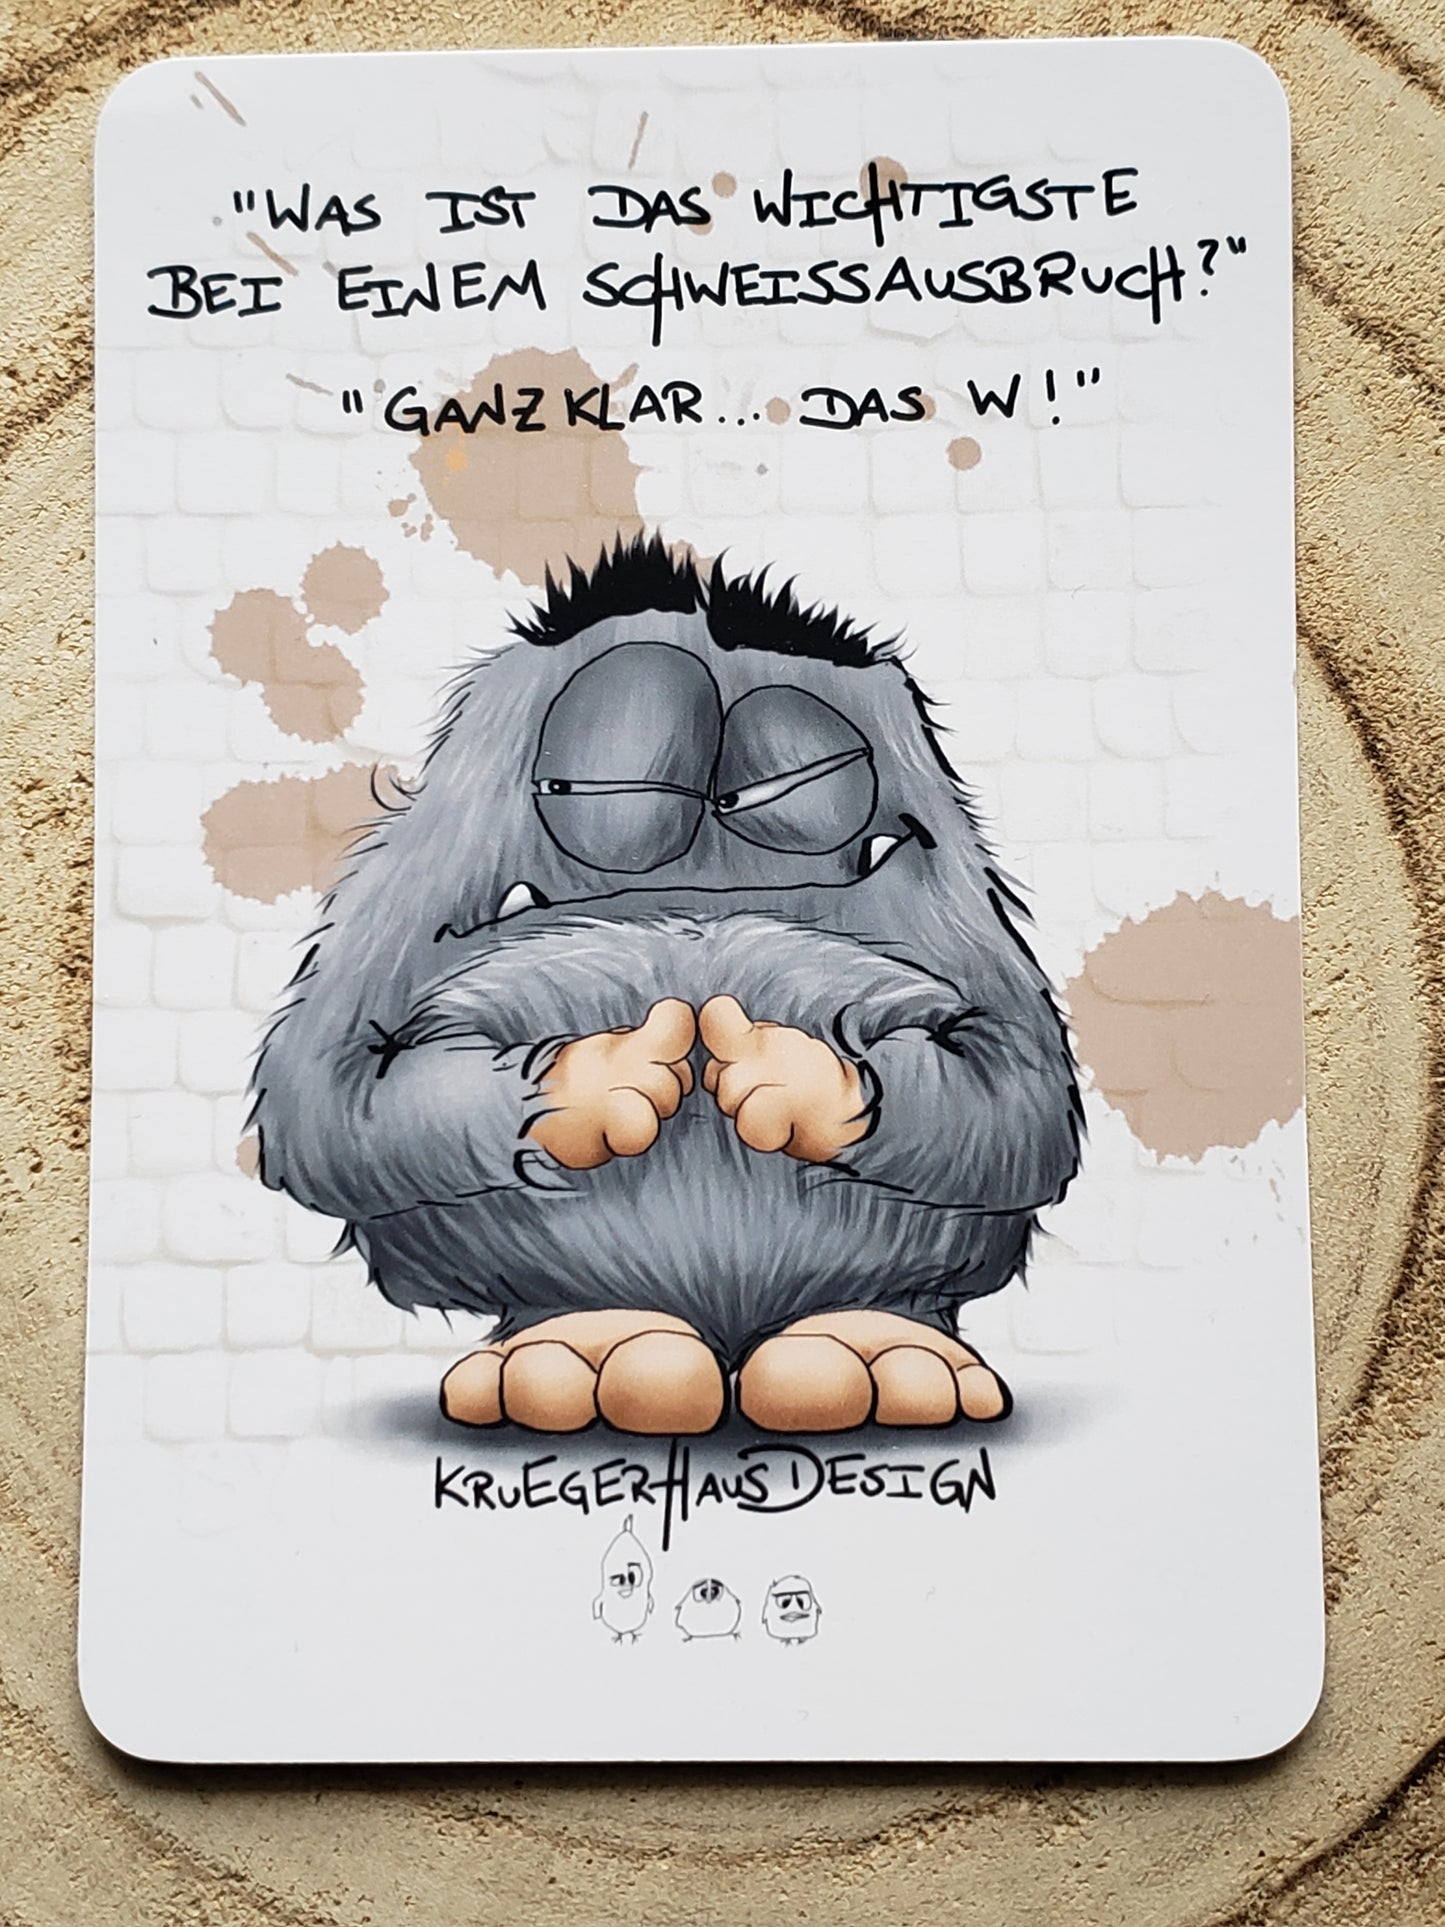 Postkarte Monster Kruegerhausdesign  " Was ist das wichtigste bei einem Schweissausbruch?."